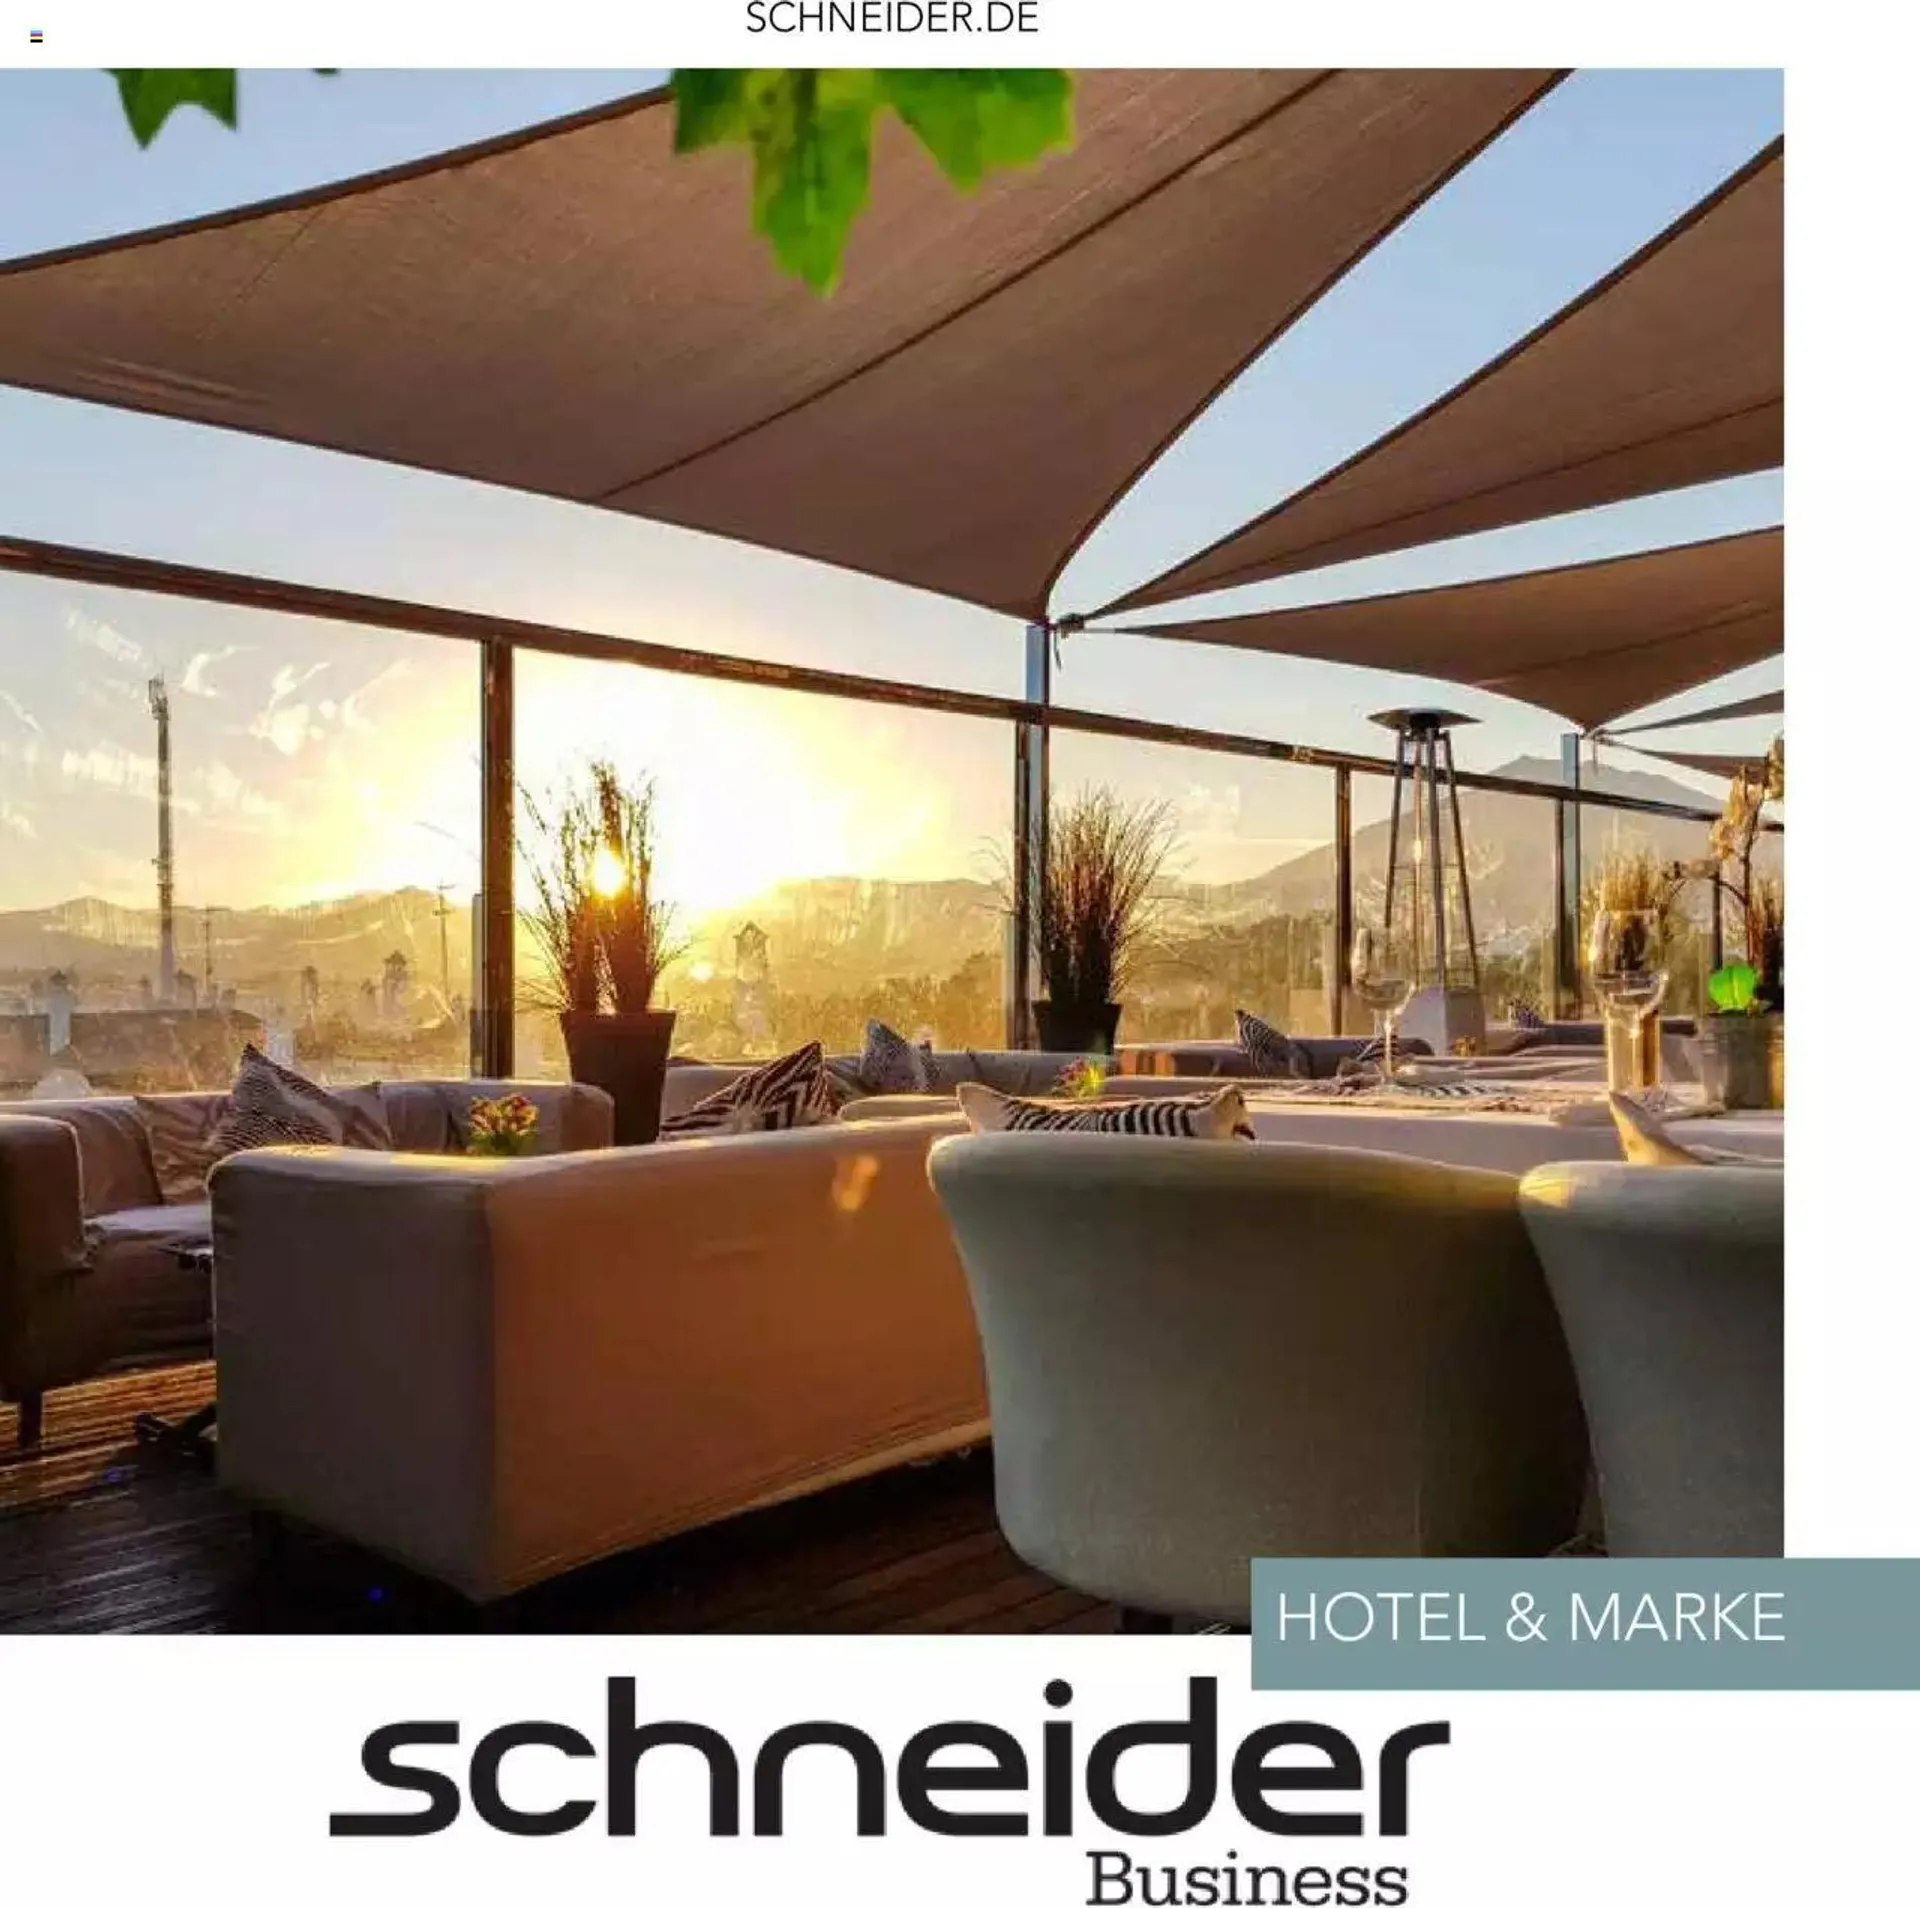 Schneider - Hotelbroschuere - 0